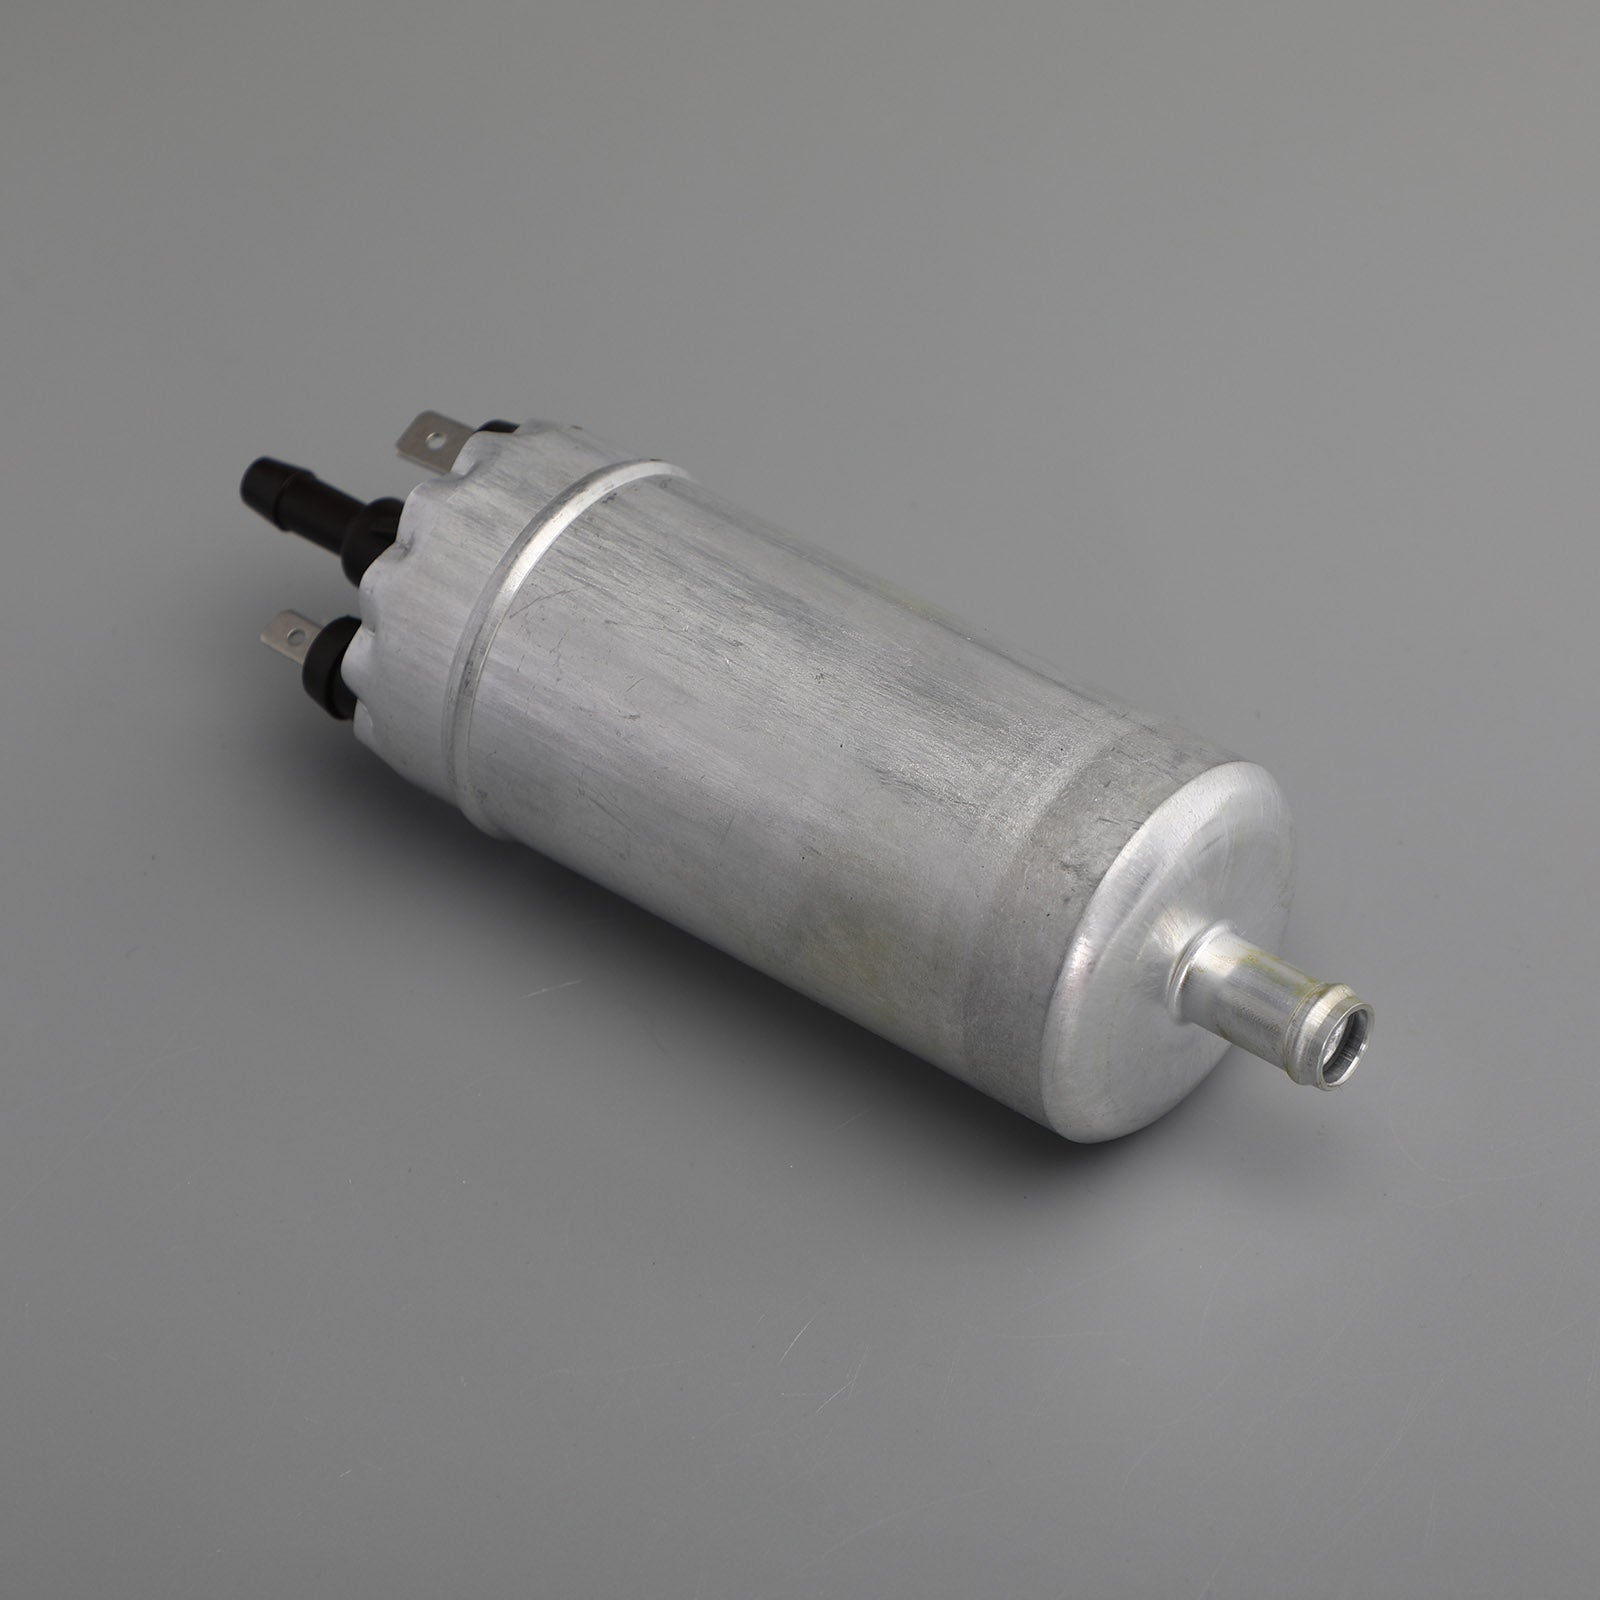 Kit pompa carburante Mercury 175 92-95 E220 Laser E200 Pro MAX